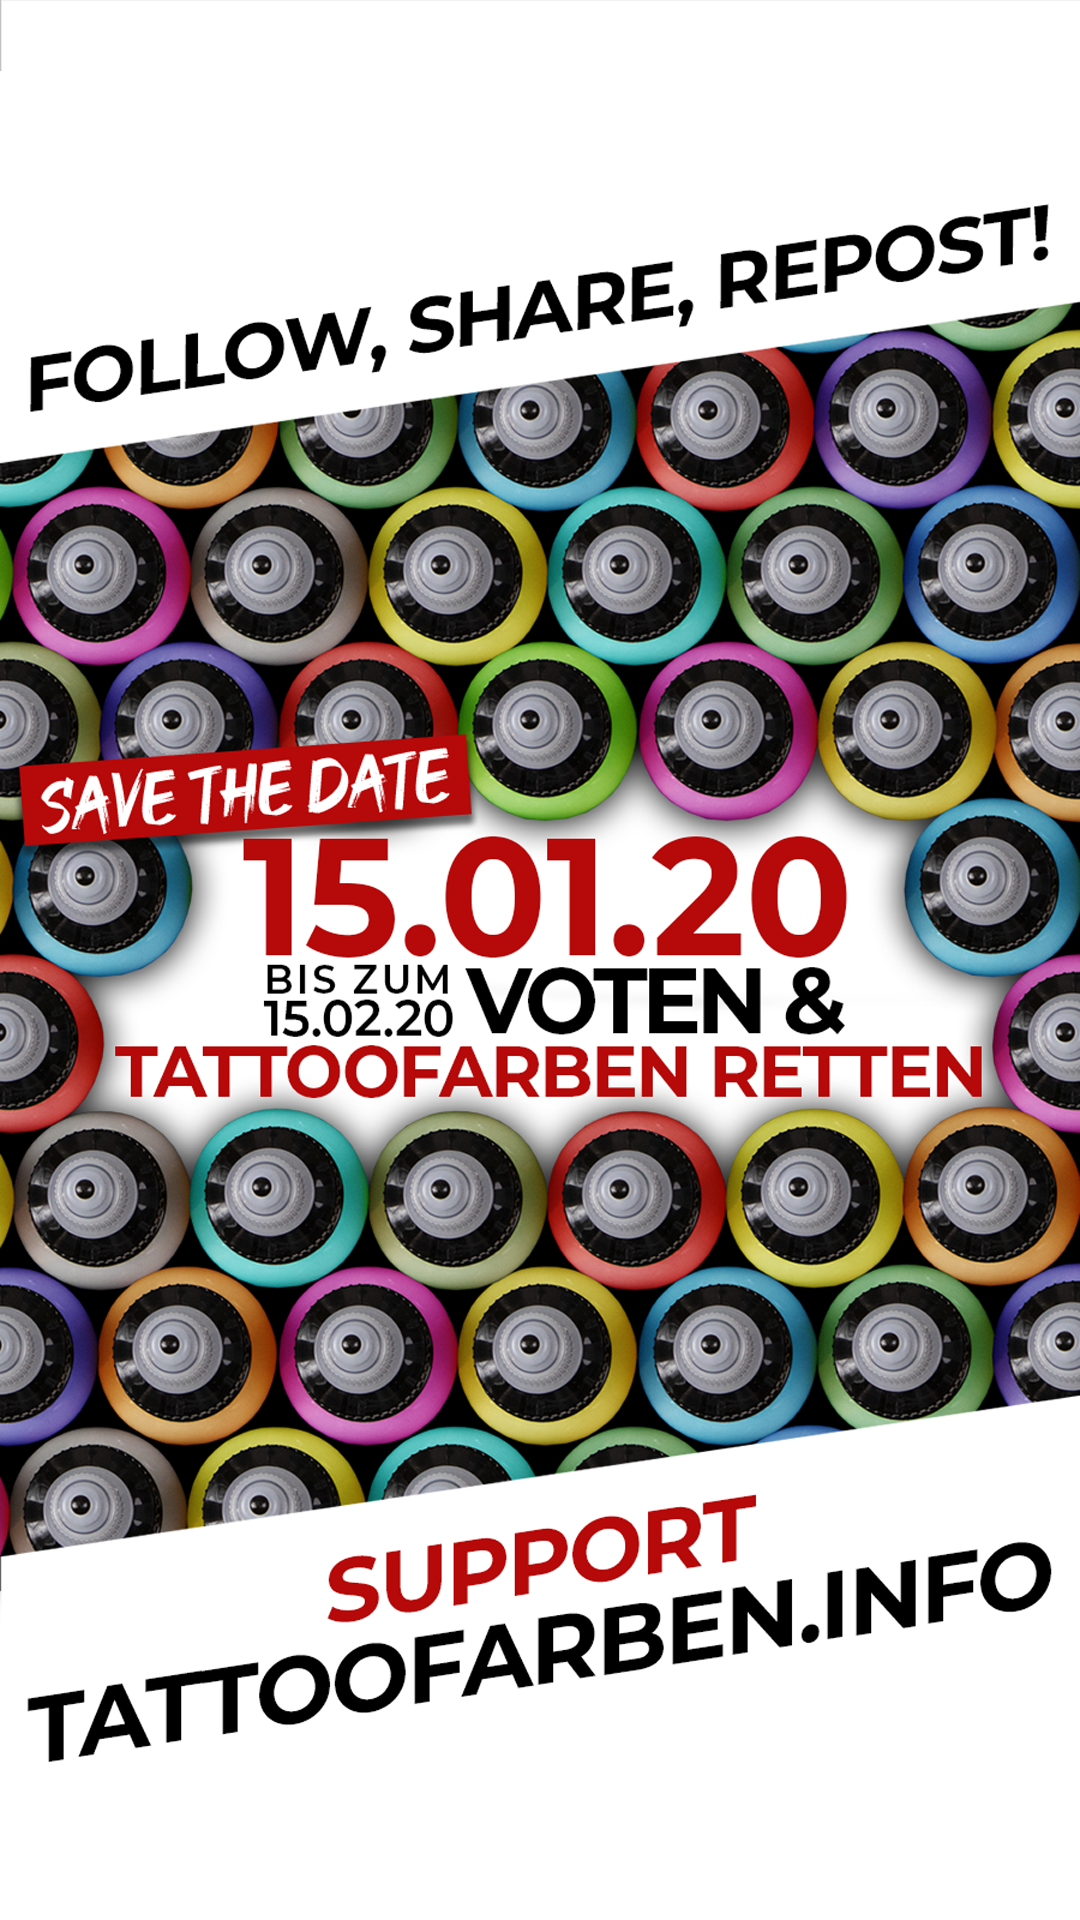 Tattoofarben.info - Banner für die Instastory